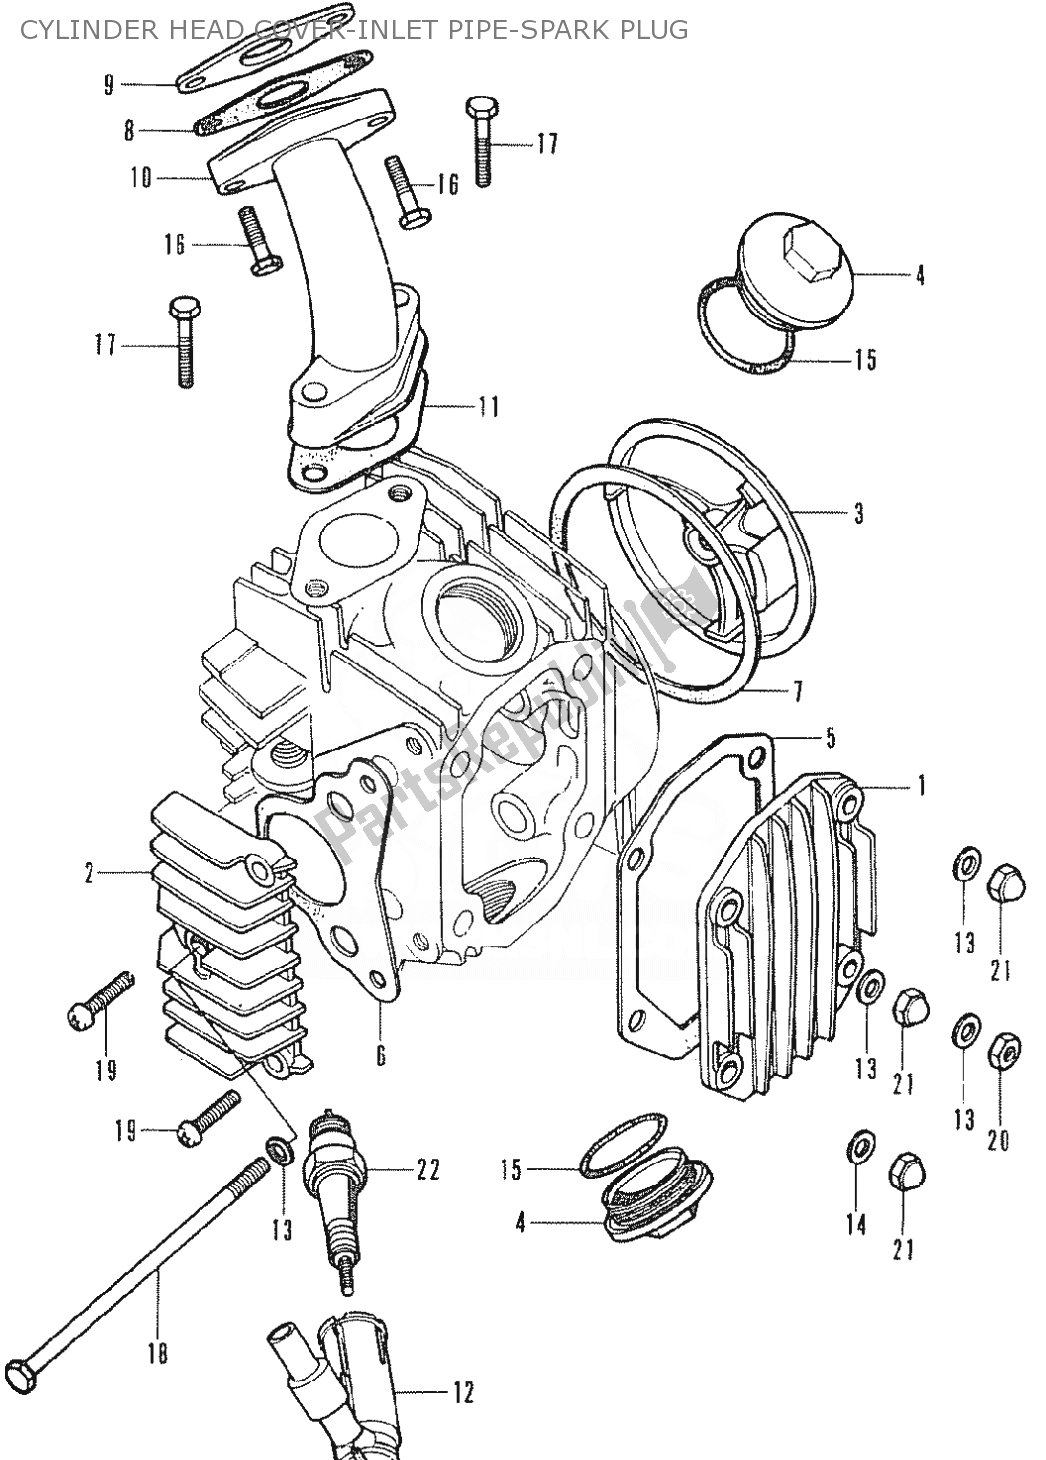 Alle onderdelen voor de Cylinder Head Cover-inlet Pipe-spark Plug van de Honda SS 50 1950 - 2023